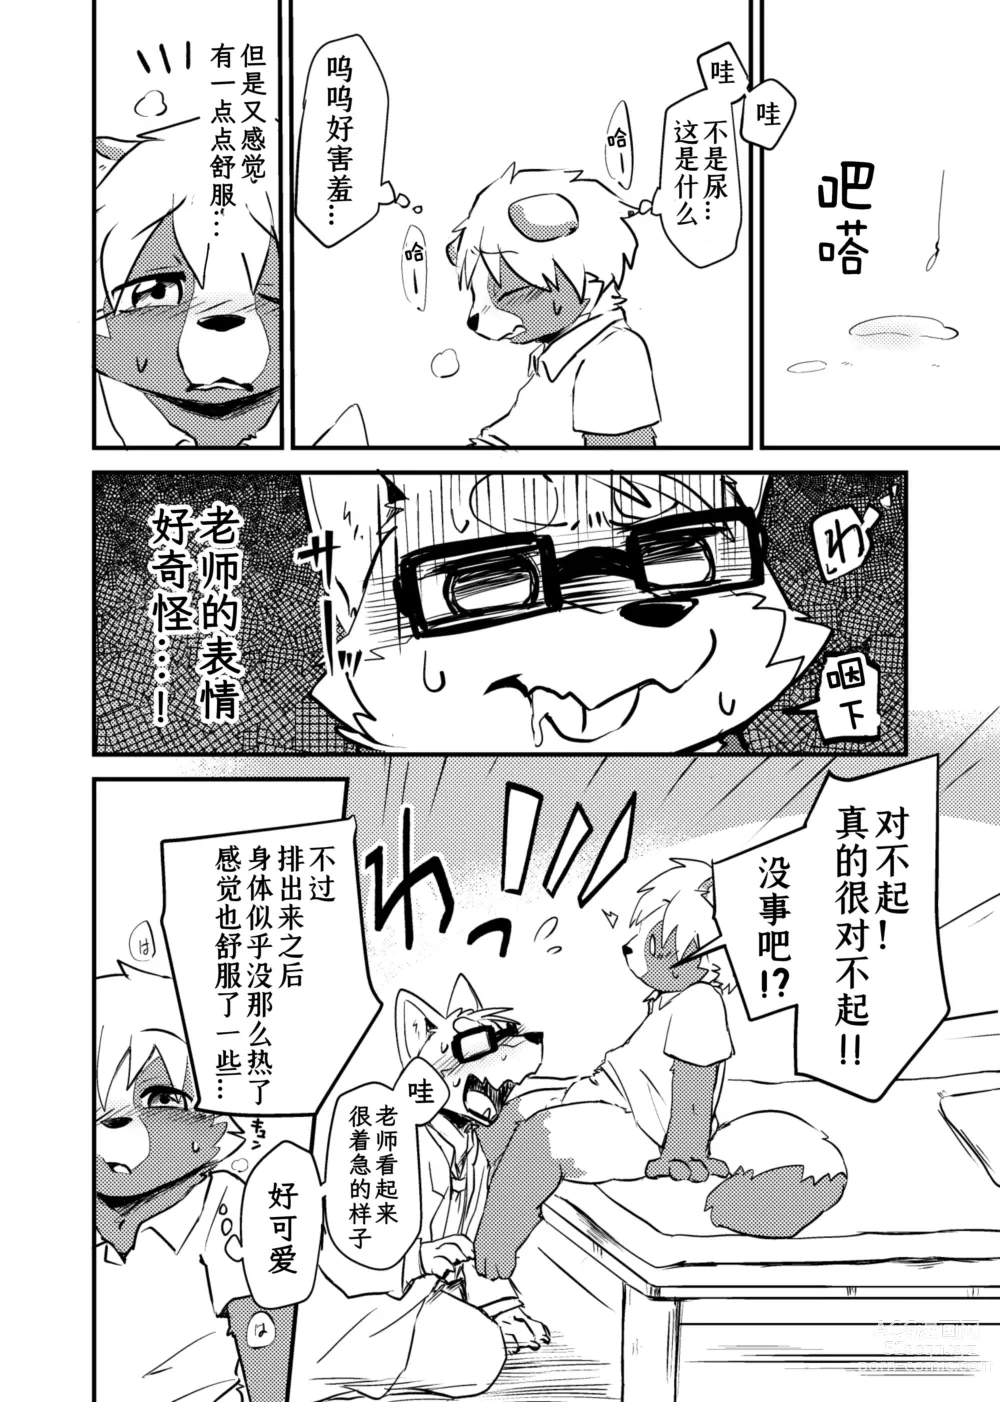 Page 24 of doujinshi 老师和我。流行性感冒务必要注意哦！？